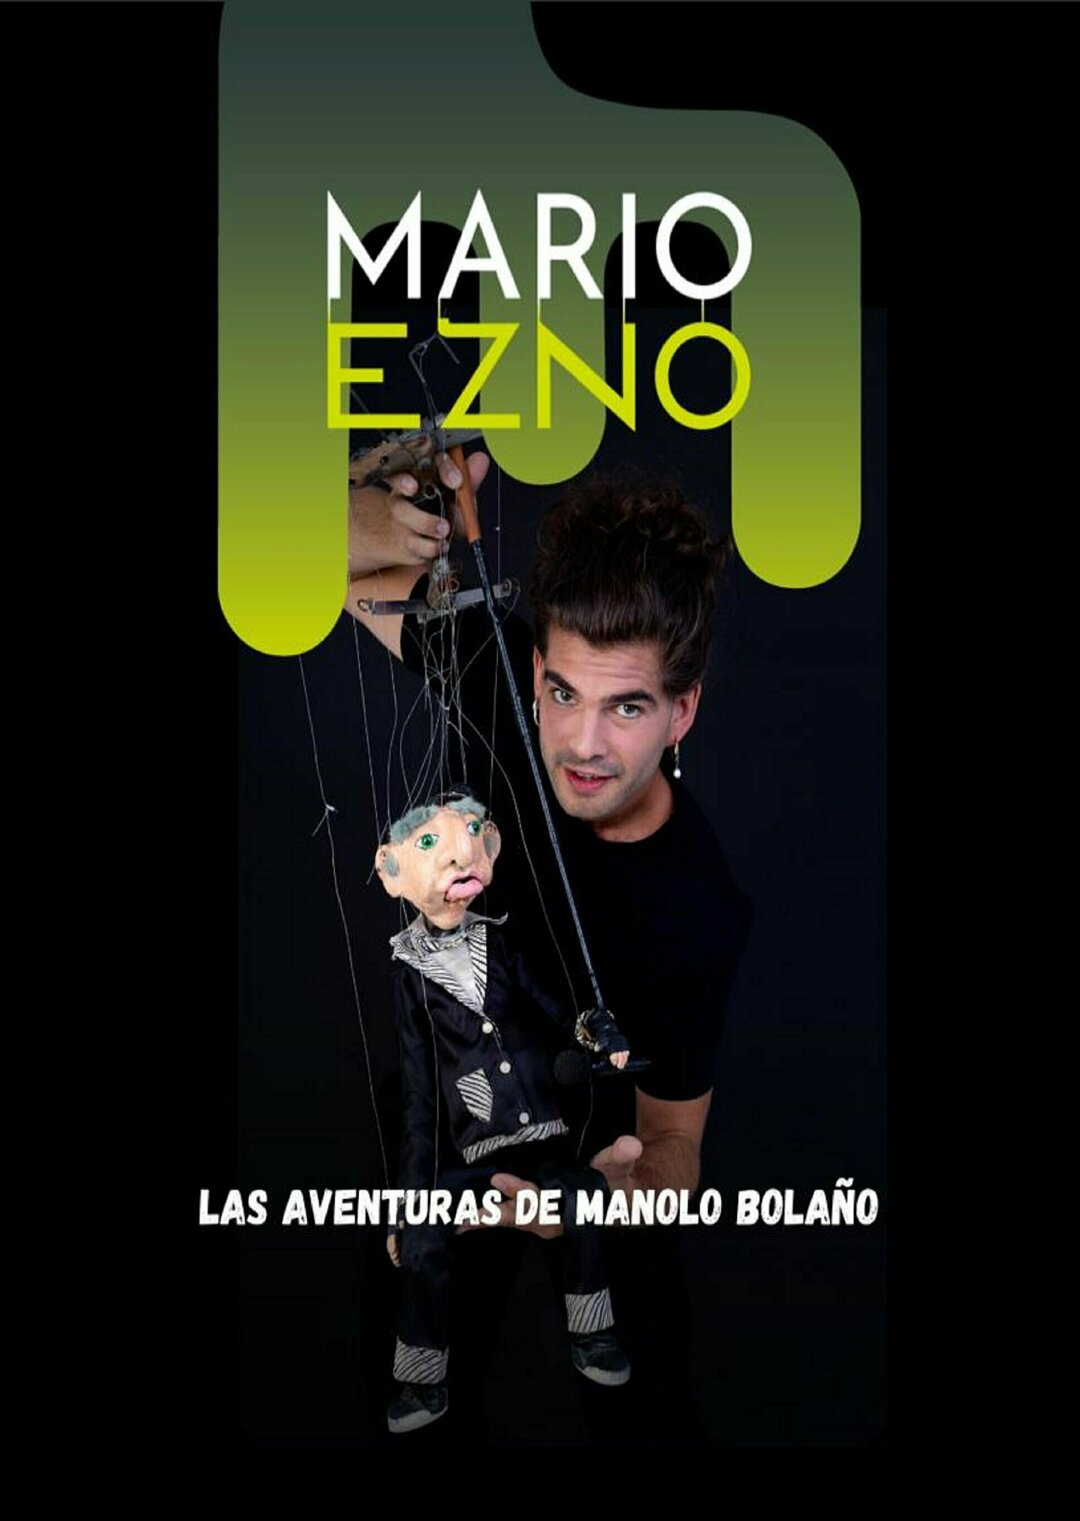 Mario Ezno, “Las aventuras de Manolo Bolaño”